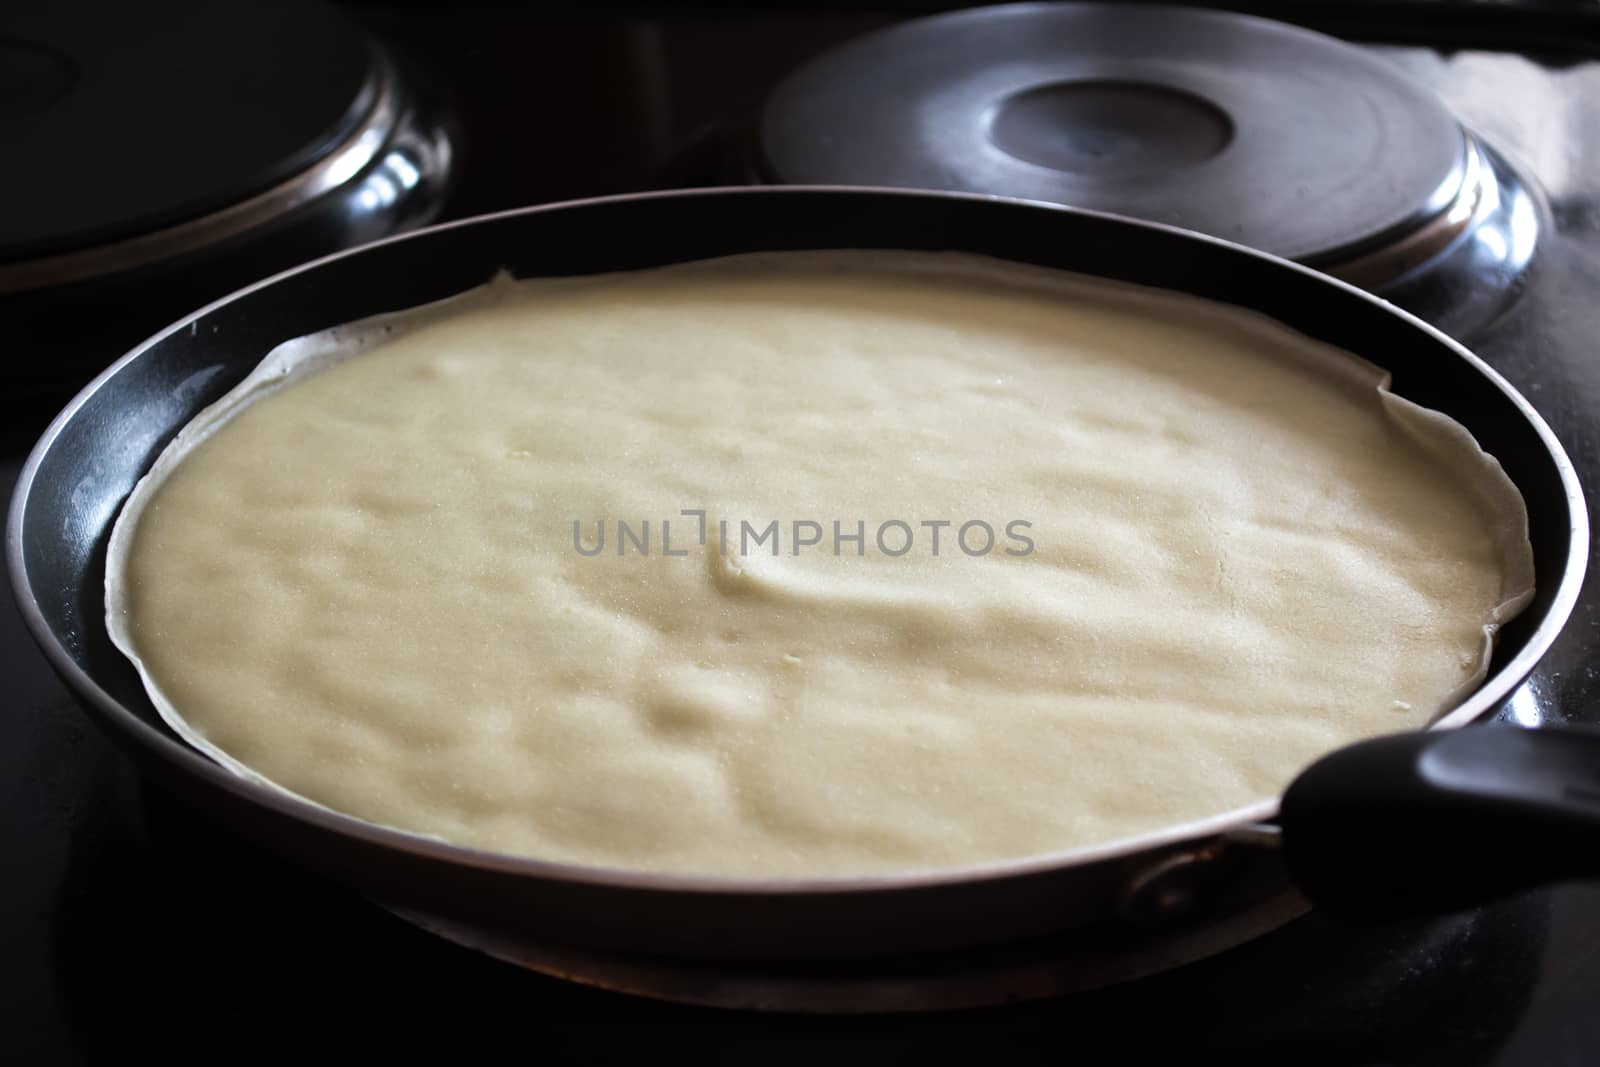 Frying pan with pancake baking on it